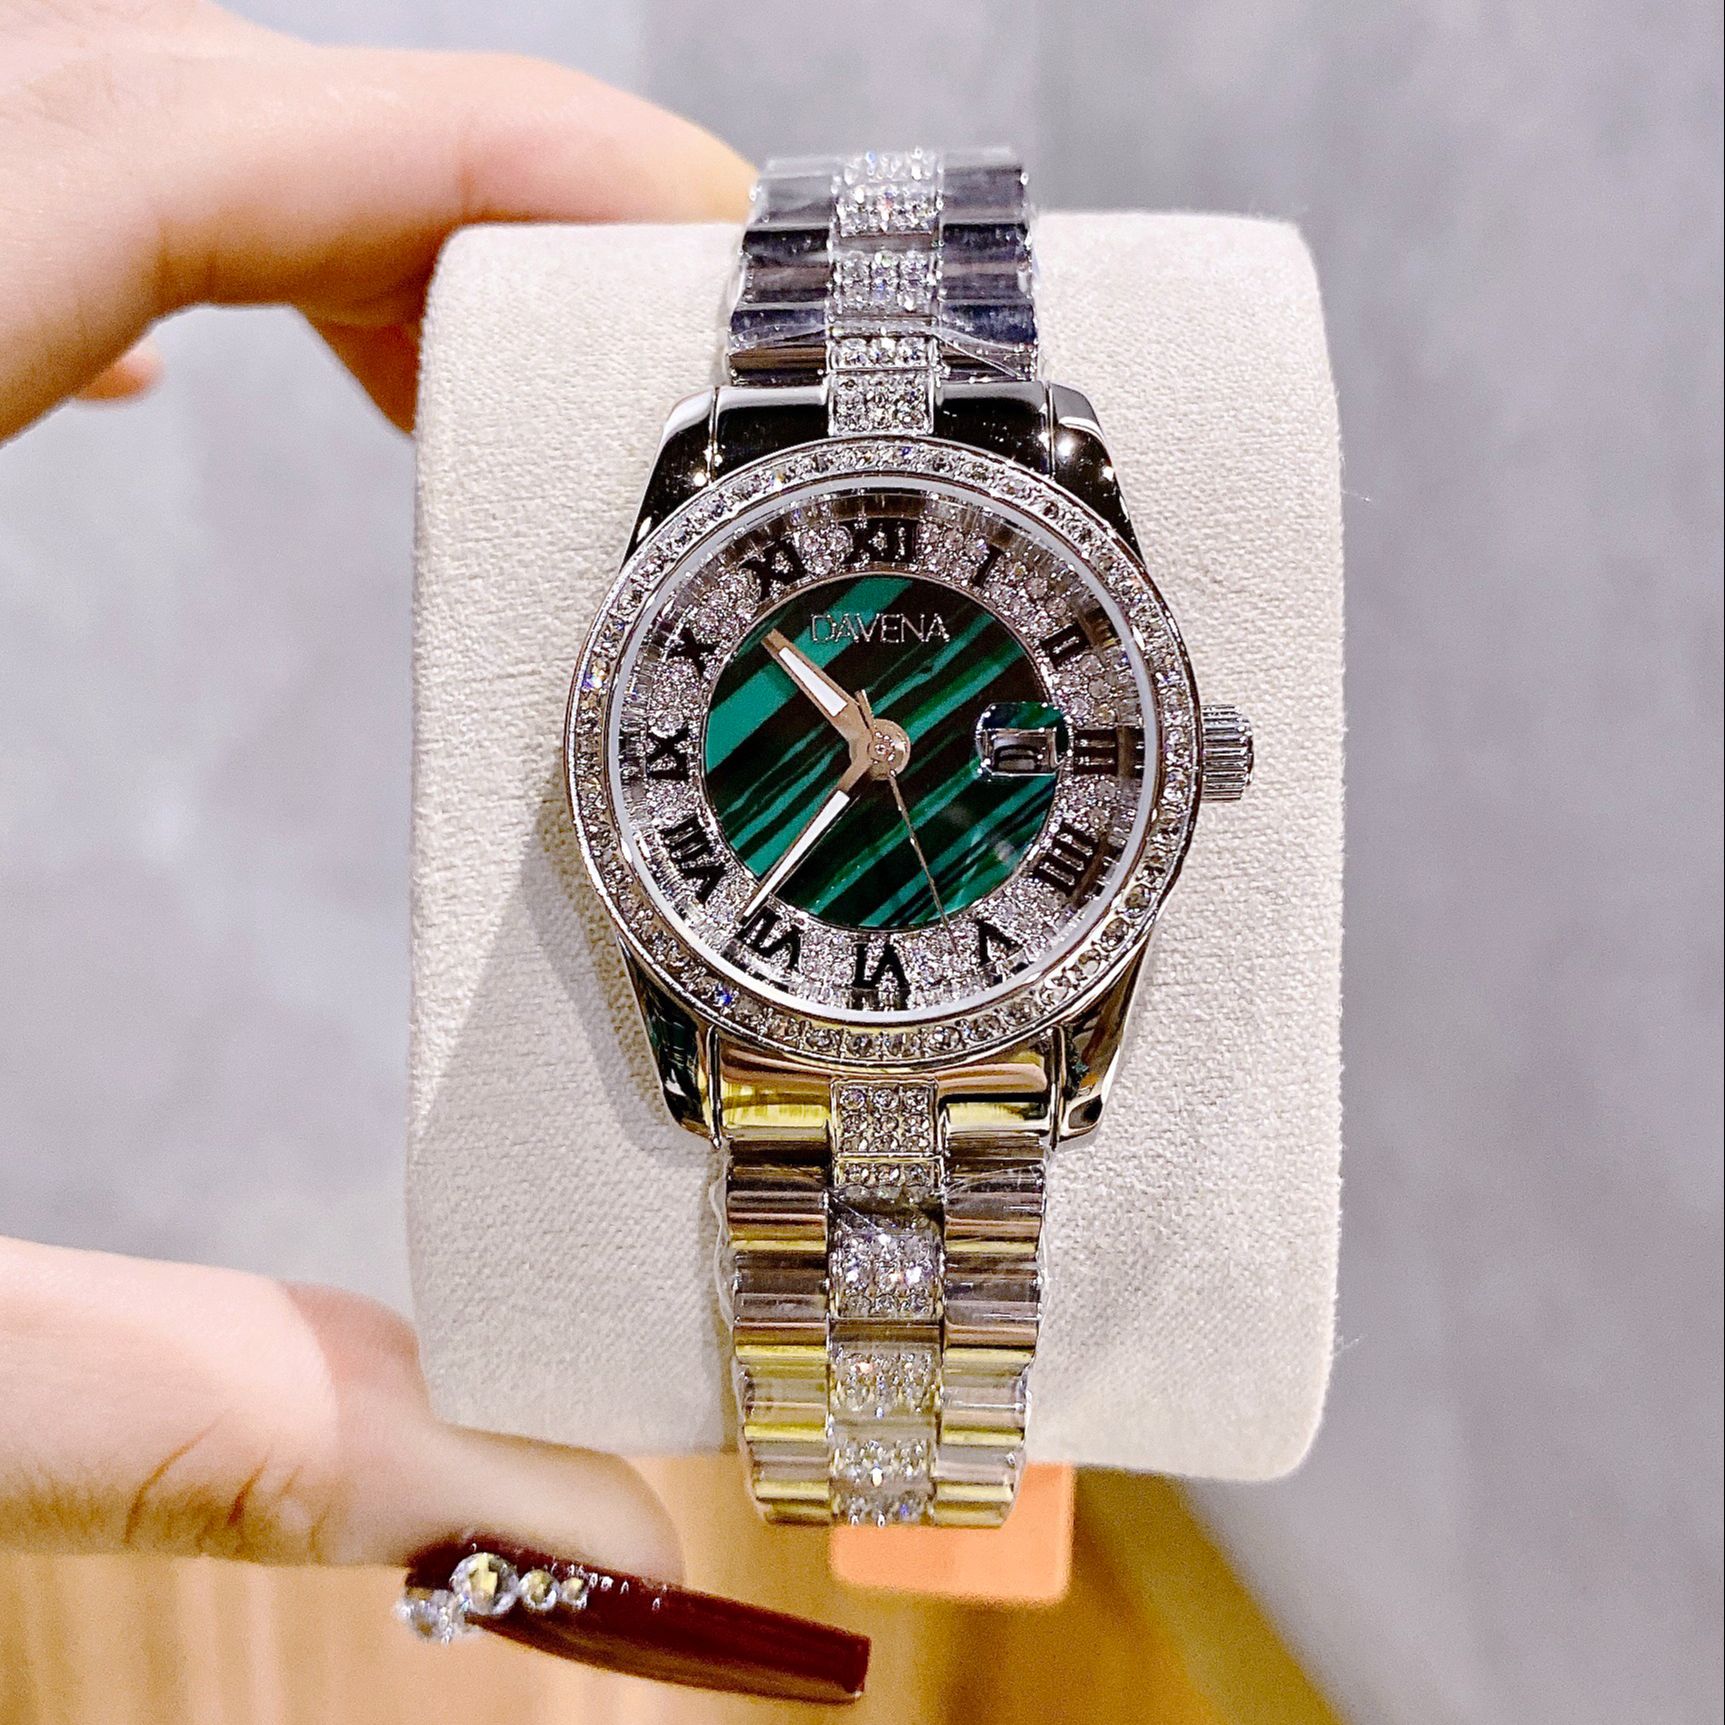 Đồng hồ nữ đeo tay cao cấp Davena D61803 dây thép đính đá chống nước chính hãng size 32mm fullbox  shop kiwi